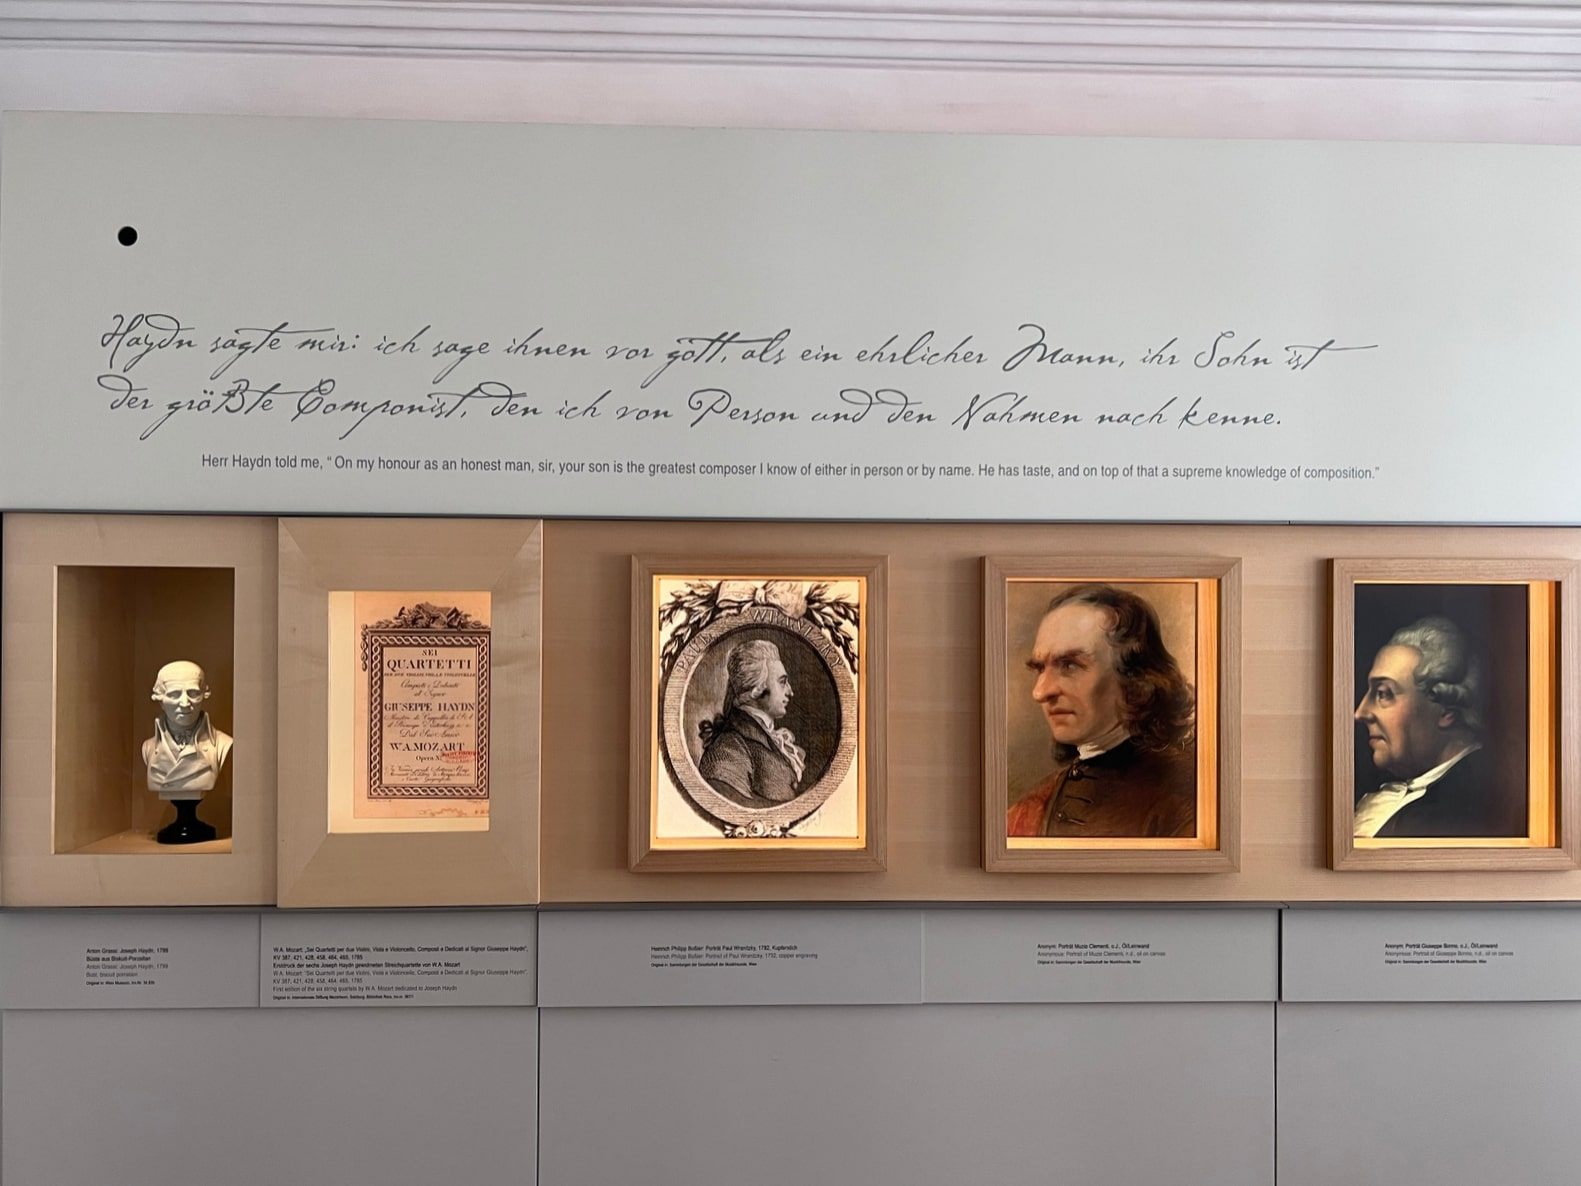 ©オーストリア政府観光局/ TYO
モーツァルトが活動していた時代と同時期の音楽家たちの肖像画